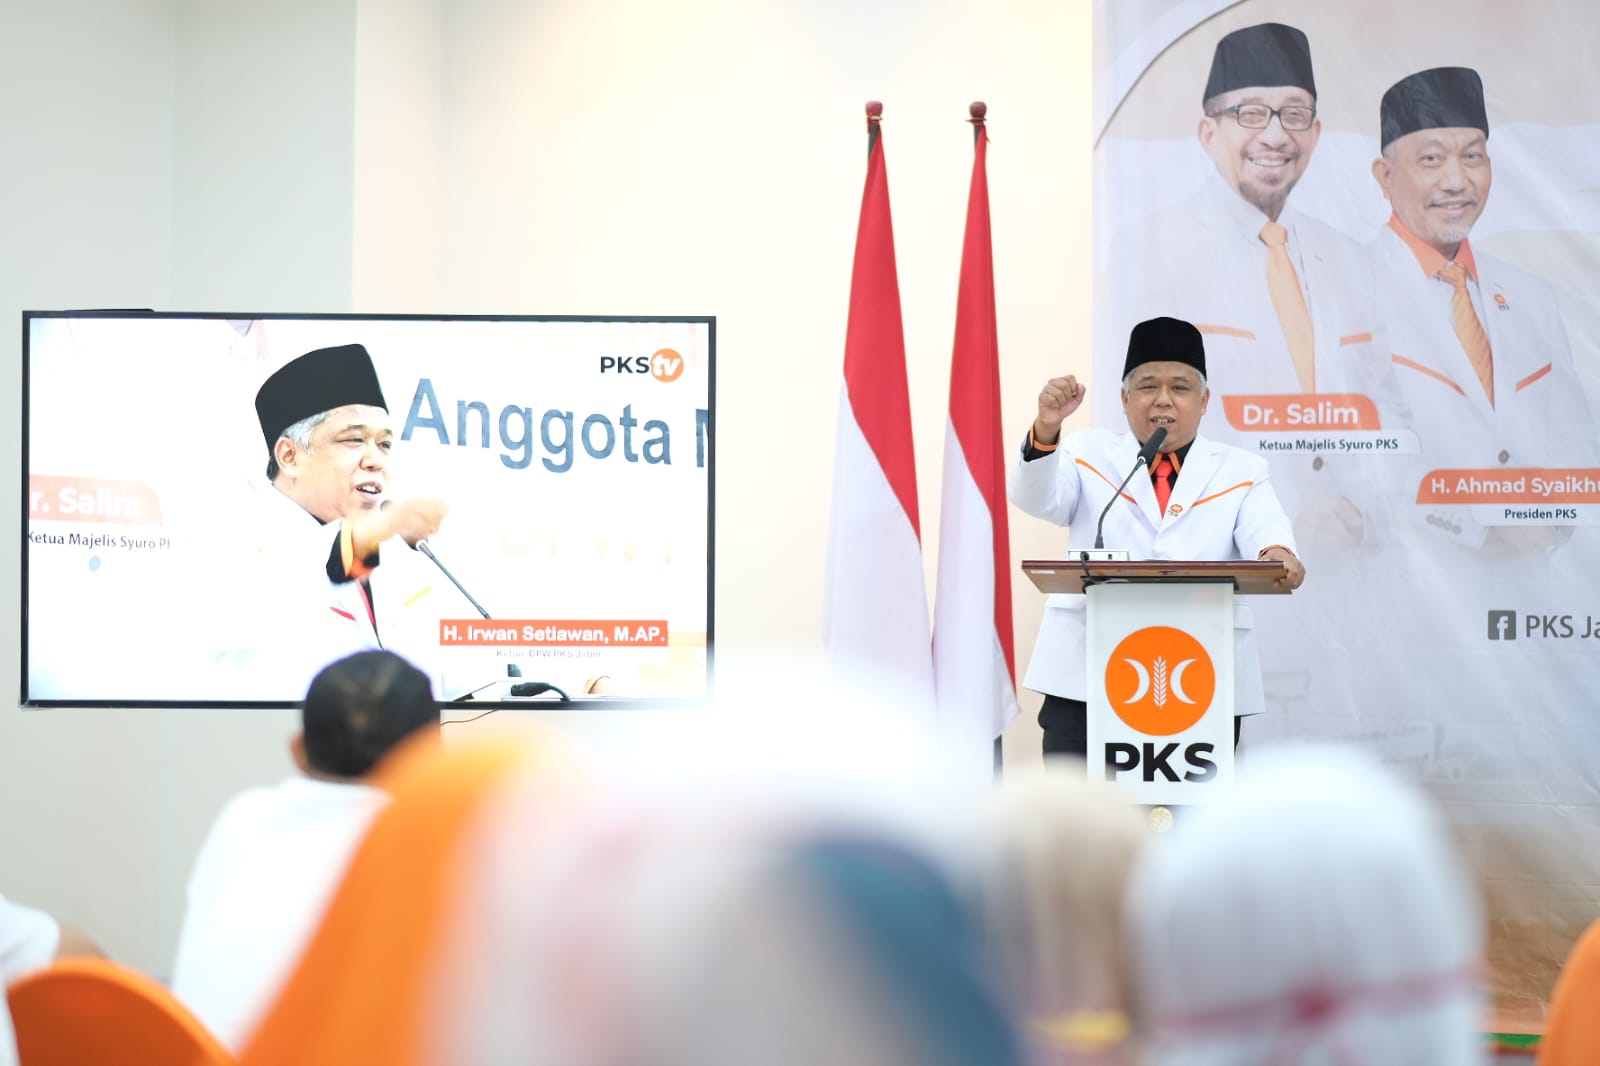 Ratusan Anggota Dilantik, Ketua PKS Jatim Minta Gaspol Beri Kontribusi untuk Rakyat dan NKRI